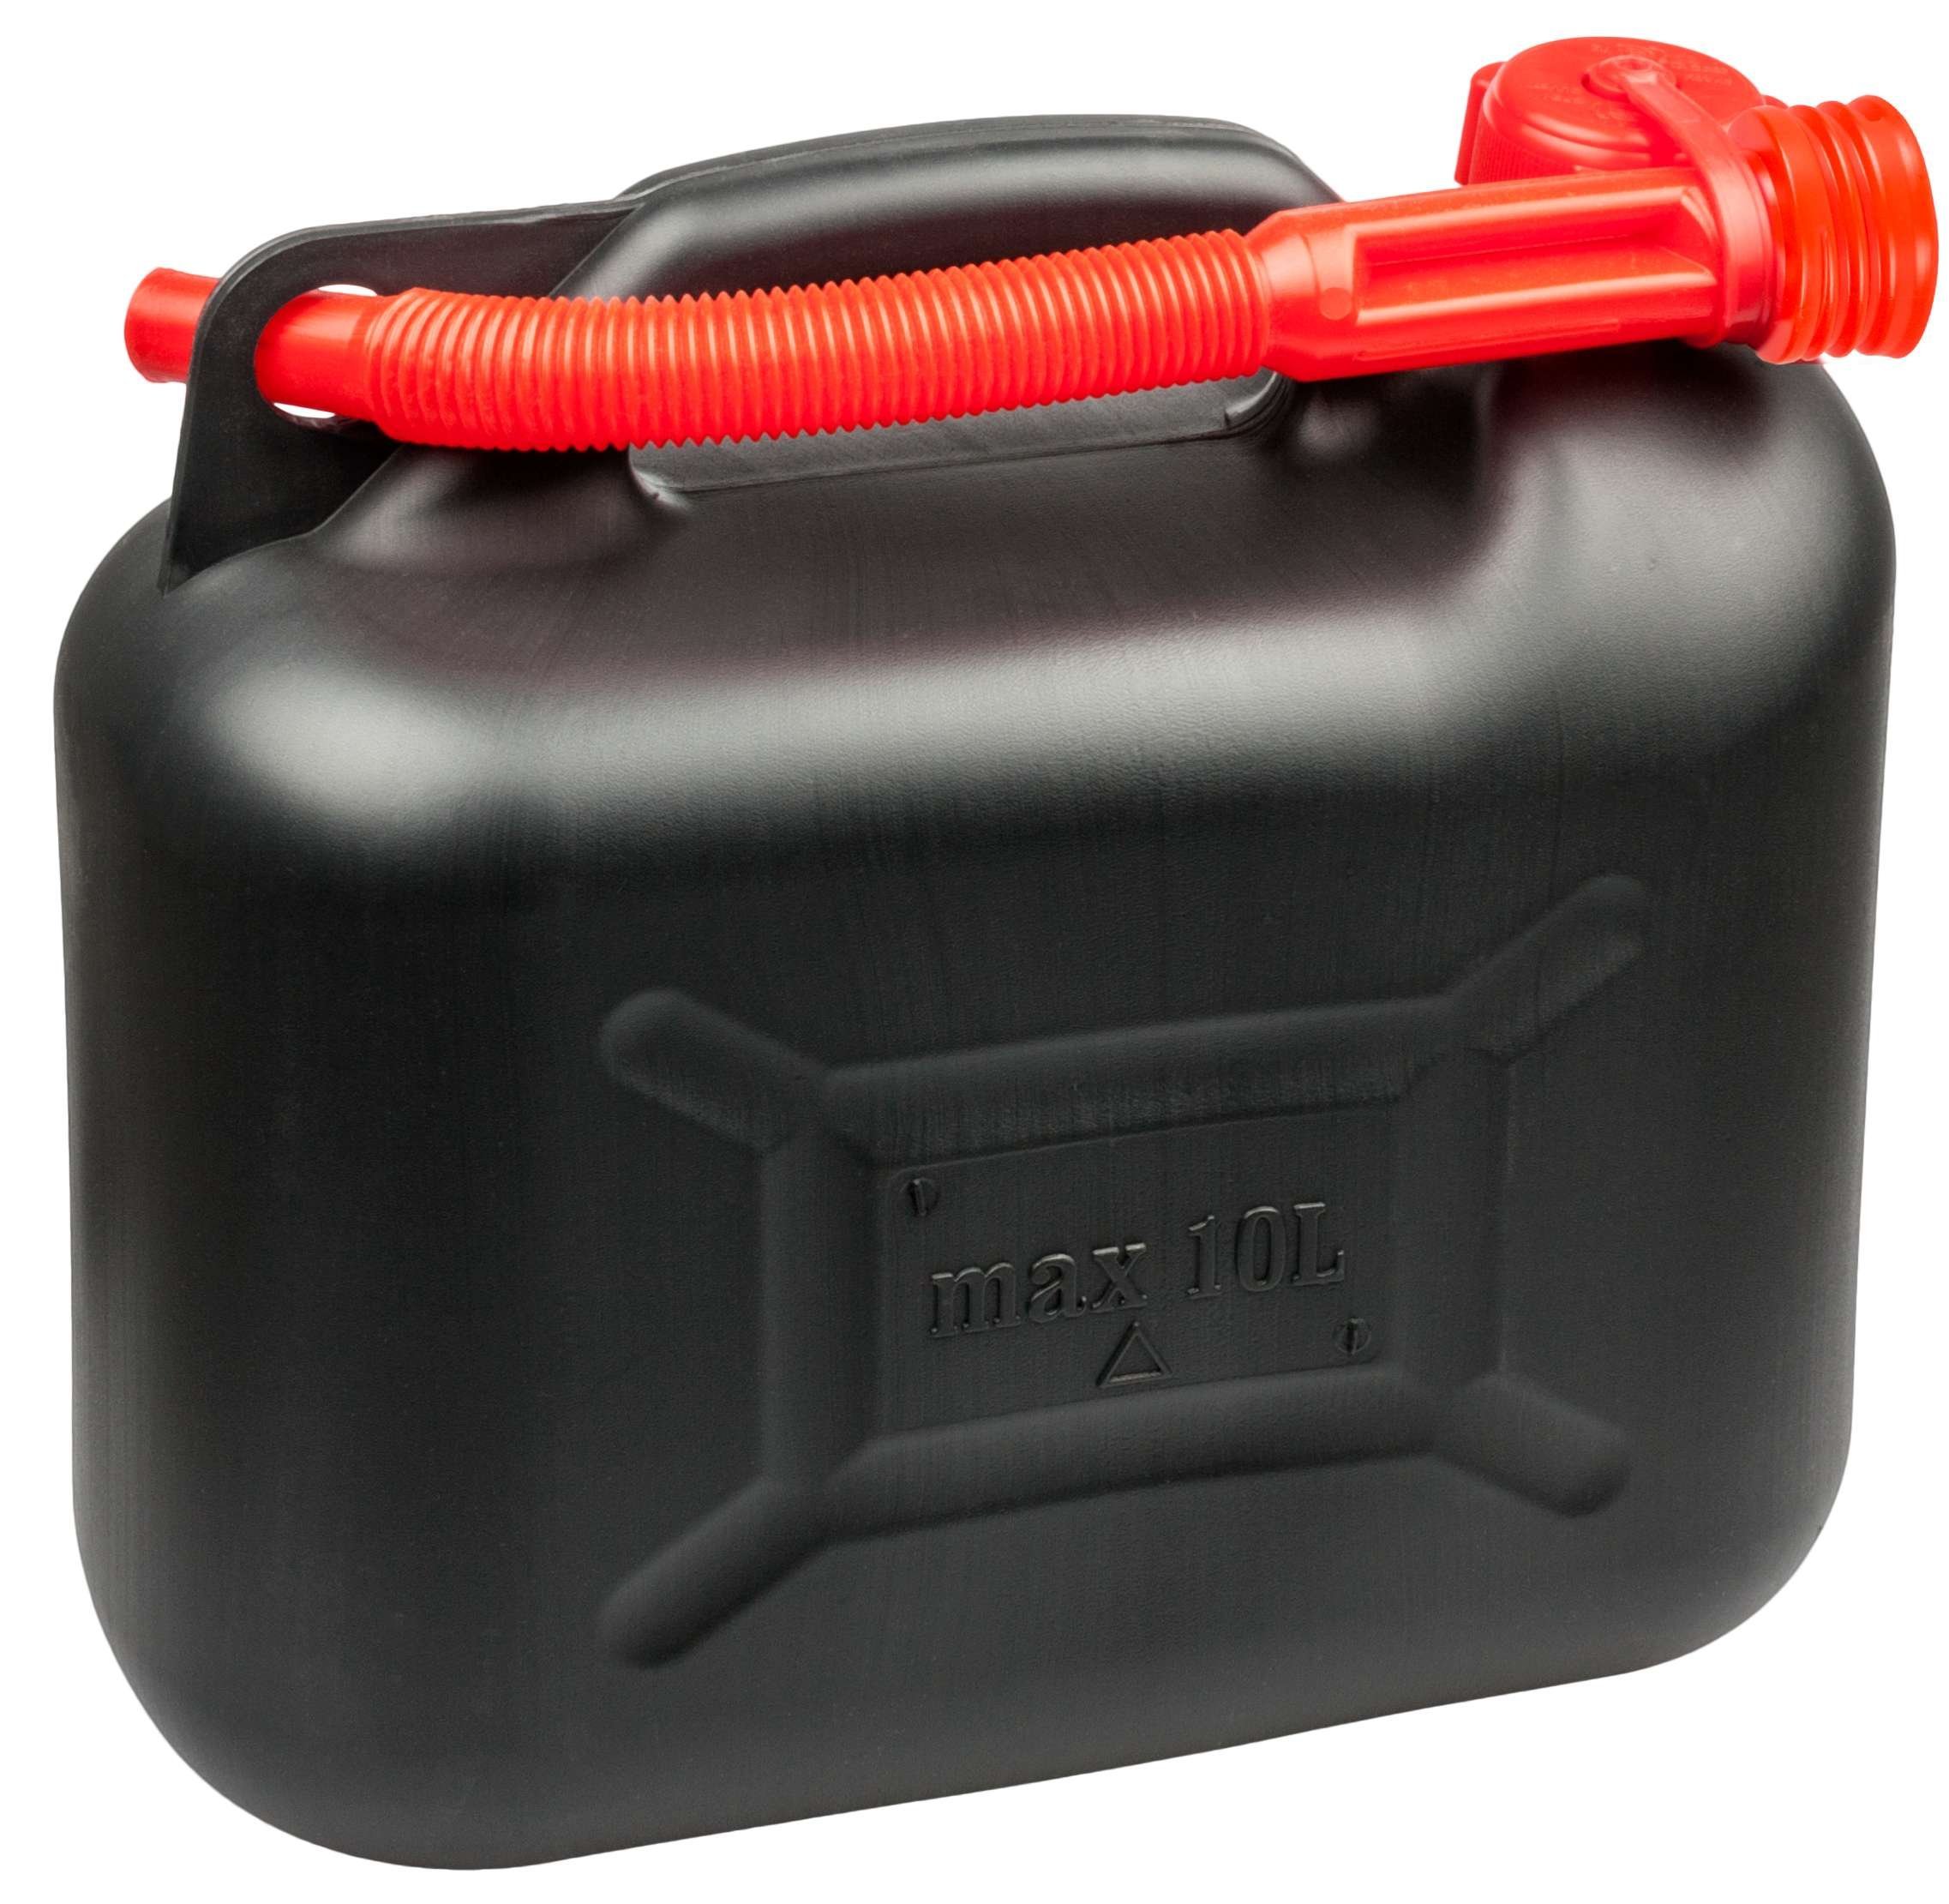 Benzinkanister 10 Liter - UN-geprüfter Krafstoffkanister mit Sicherheitsverschluss